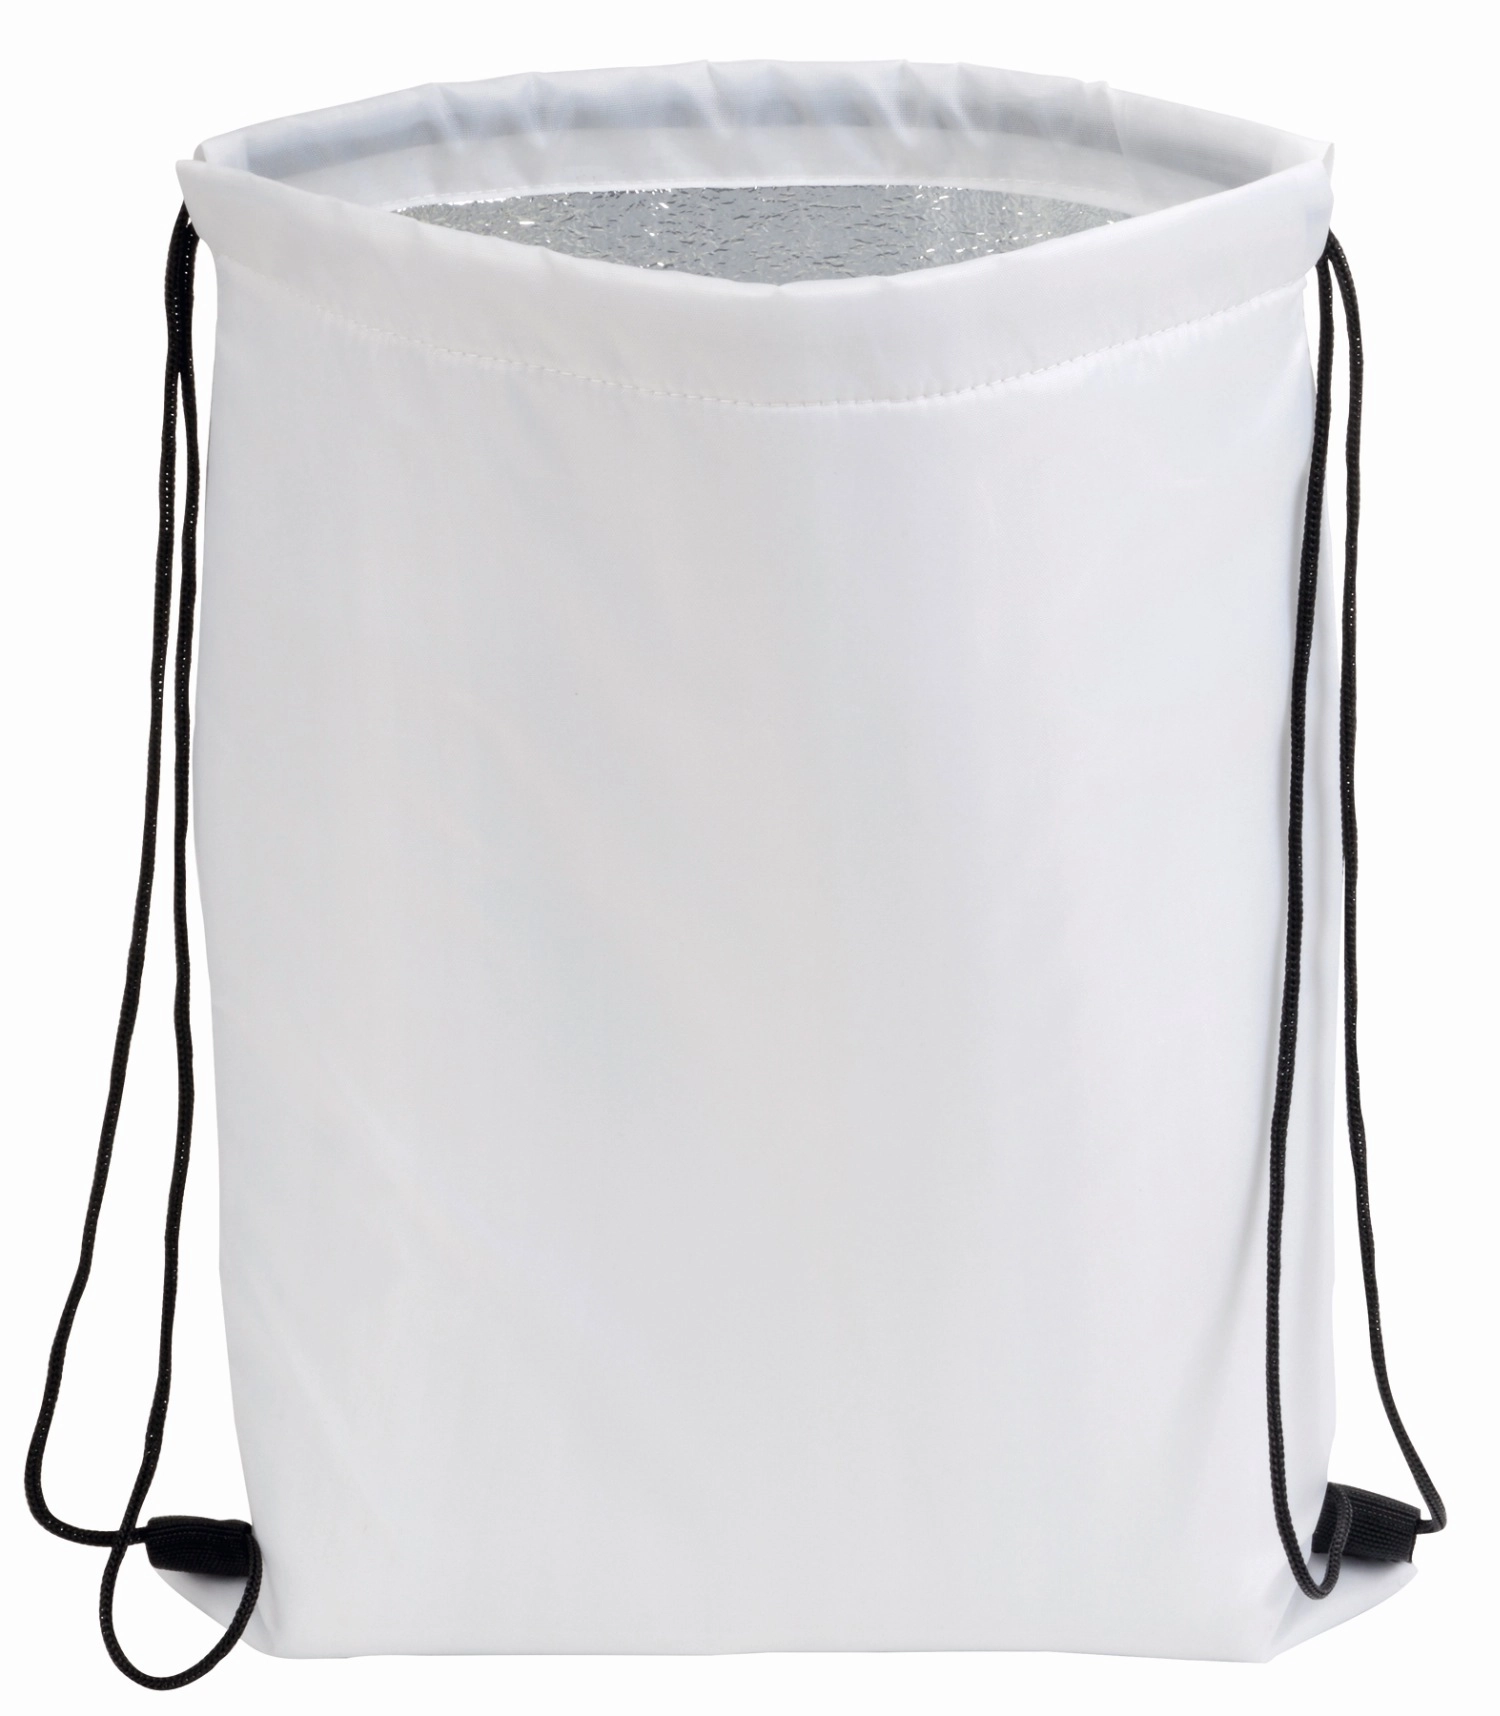 Plecak chłodzący ISO COOL, biały 56-0801175 biały